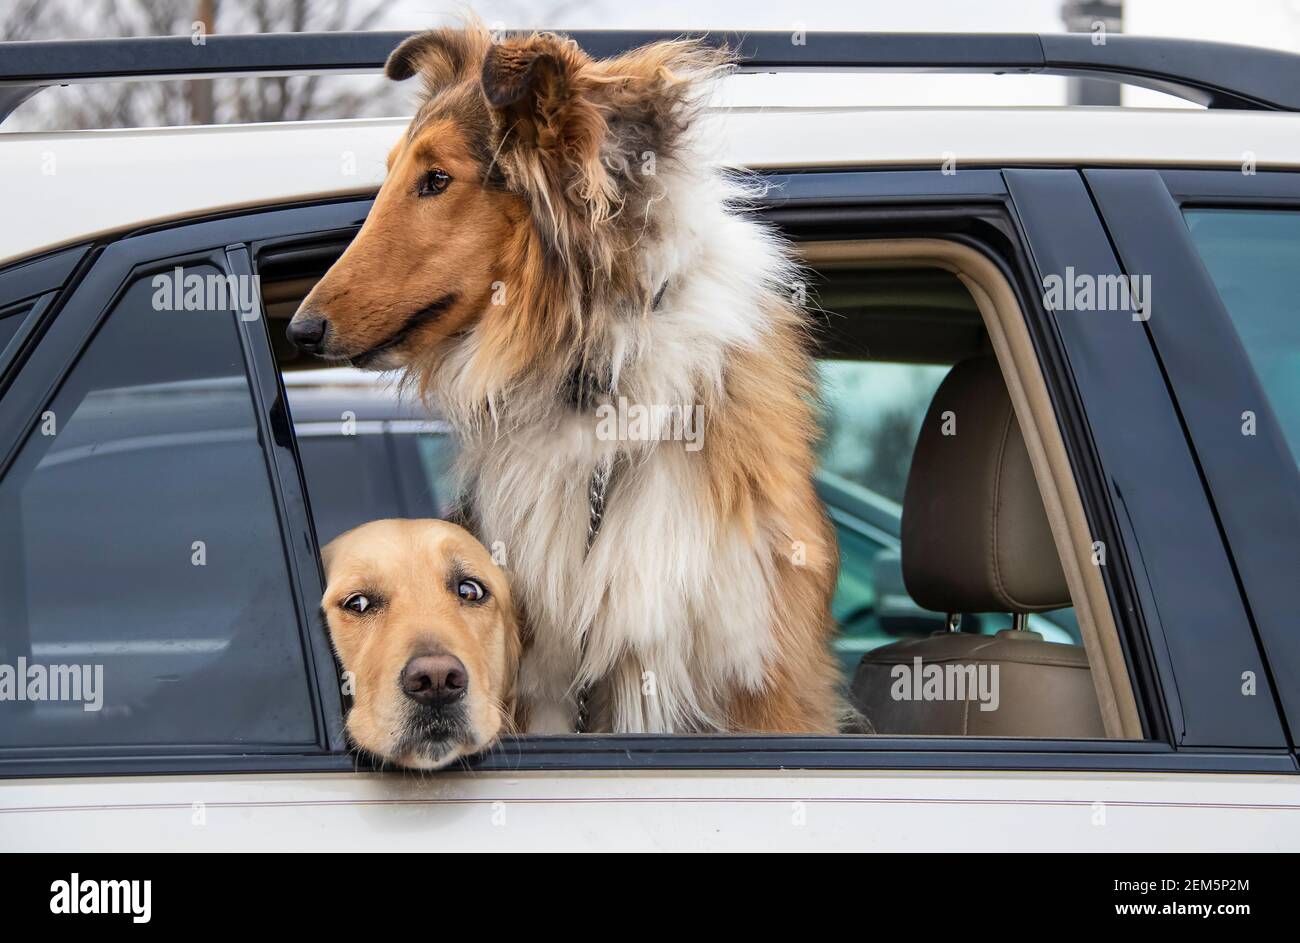 Zwei Hunde im geparkten Auto - schöne elegante Collie suchen Draußen auf der Welt und goldenes Labor, das mit Angst aufgeht Augen Stockfoto